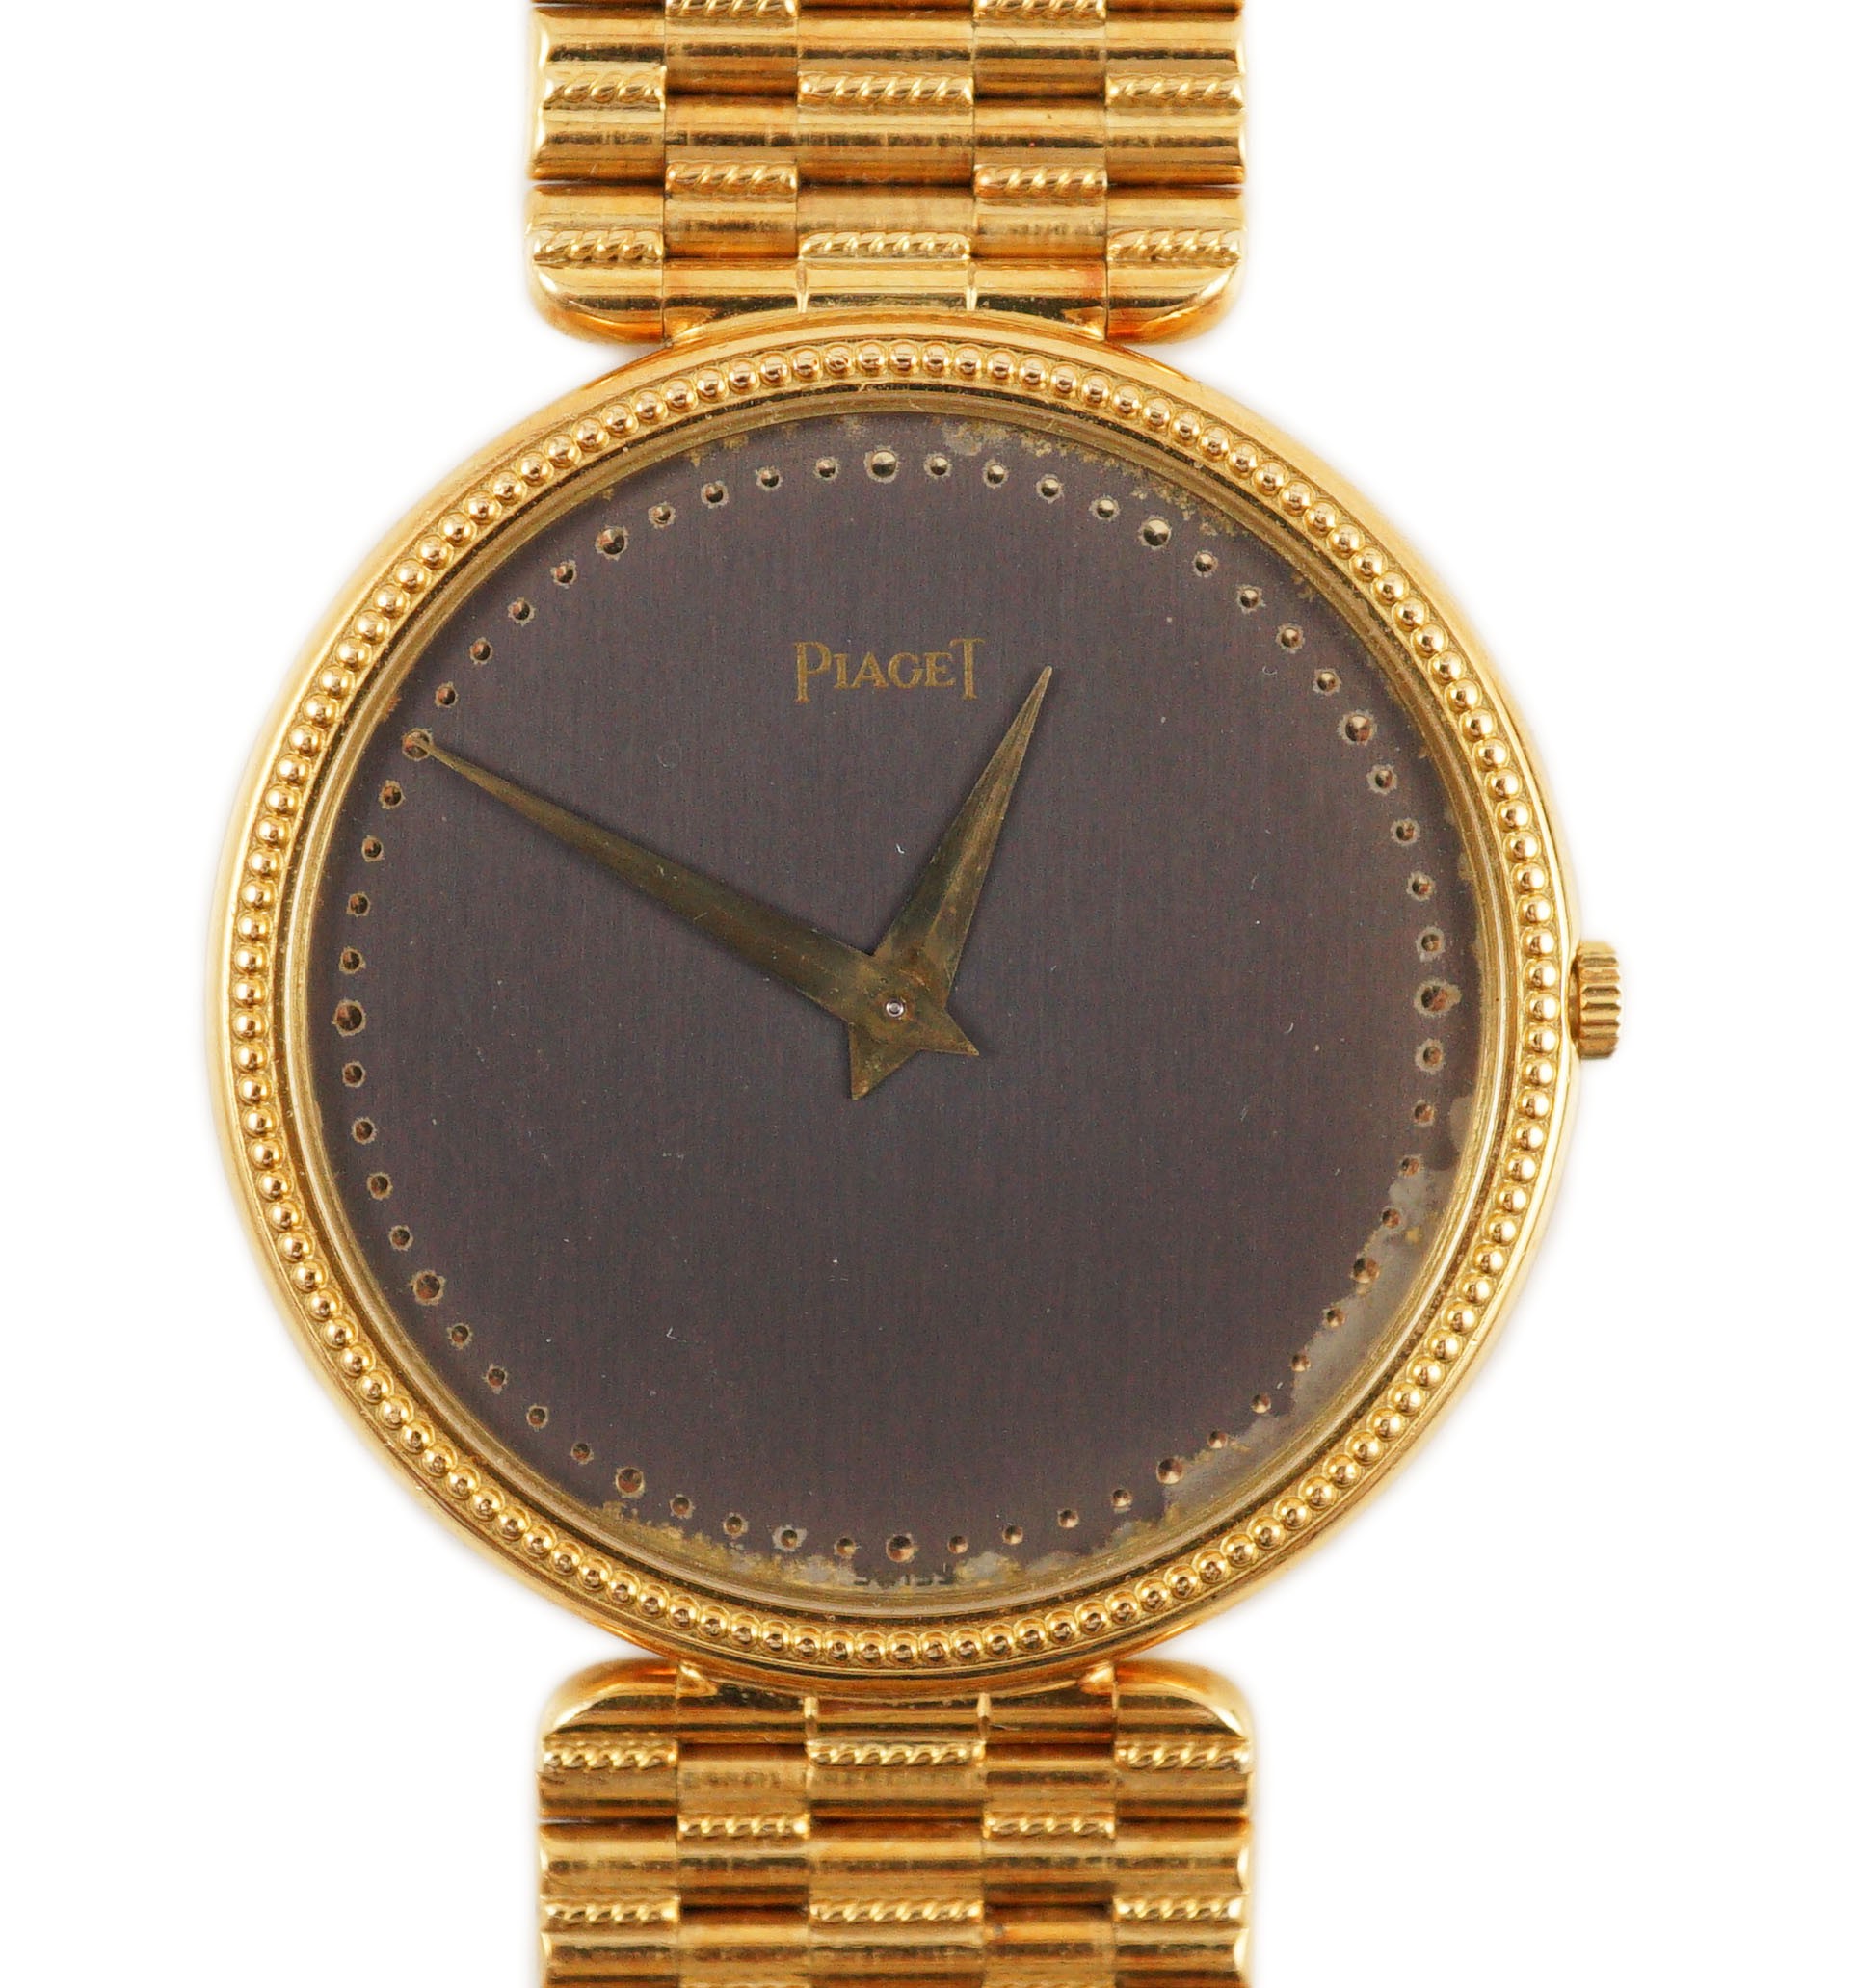 A gentleman's 18ct gold Piaget manual wind dress wrist watch, on an 18ct gold Piaget bracelet